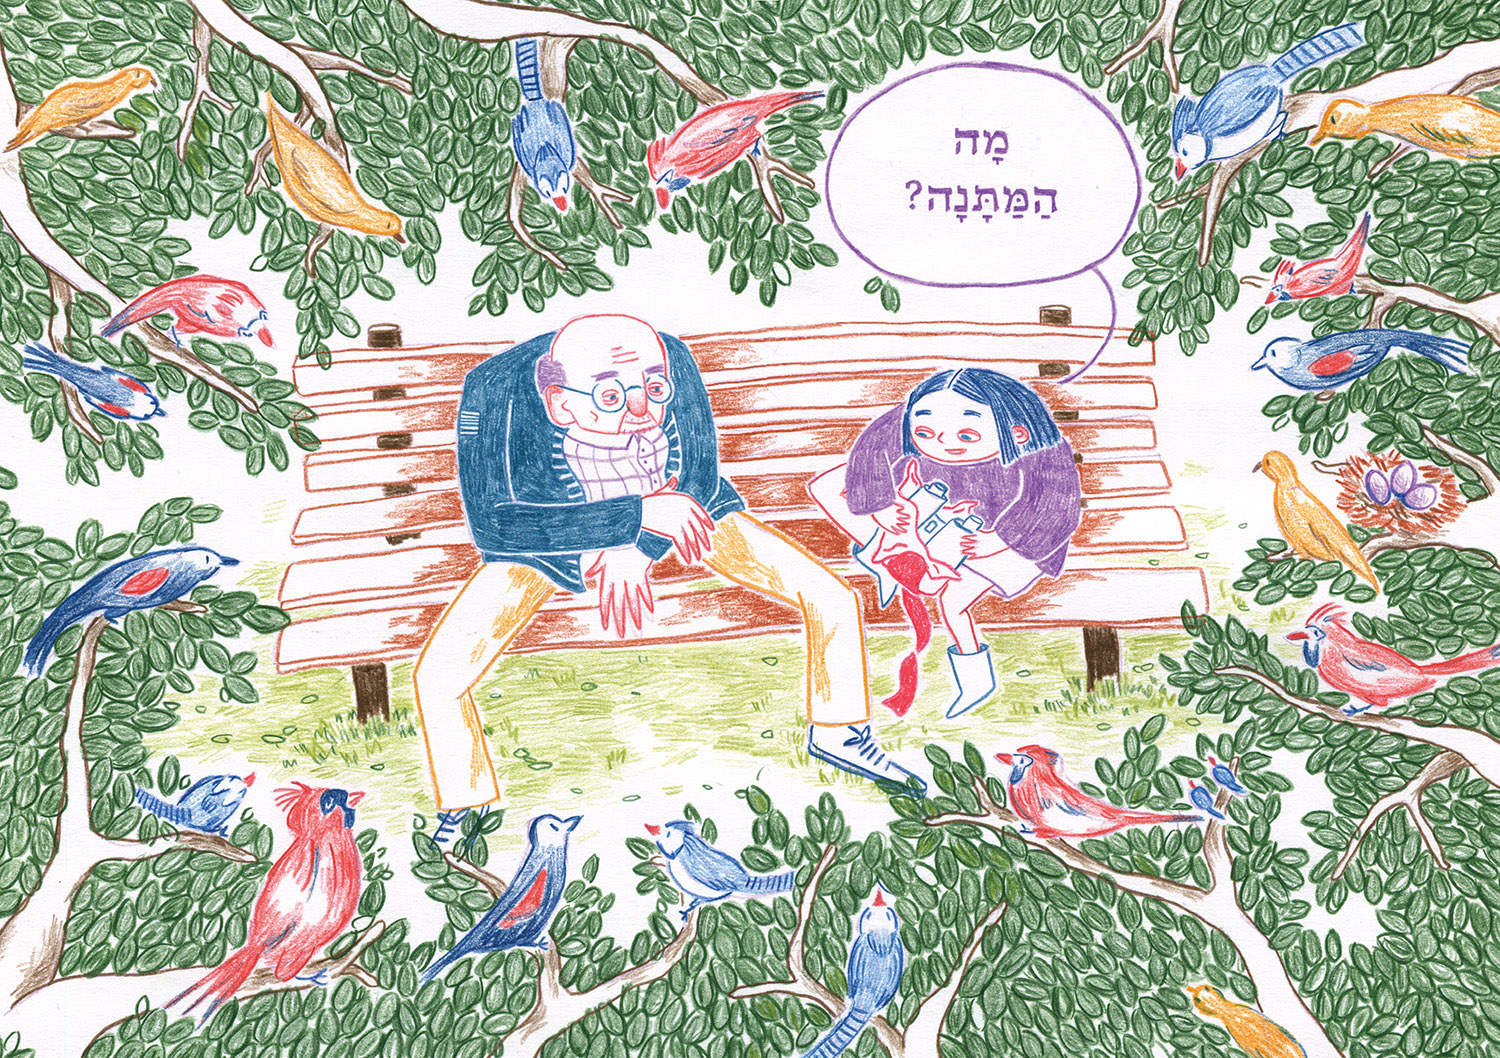 איור של סבא וילדה יושבים על ספסל בגינה, מתוך ספר ילדים, שיתוף פעולה בין המחלקה לתקשורת חזותית והוצאת חוֹלָם